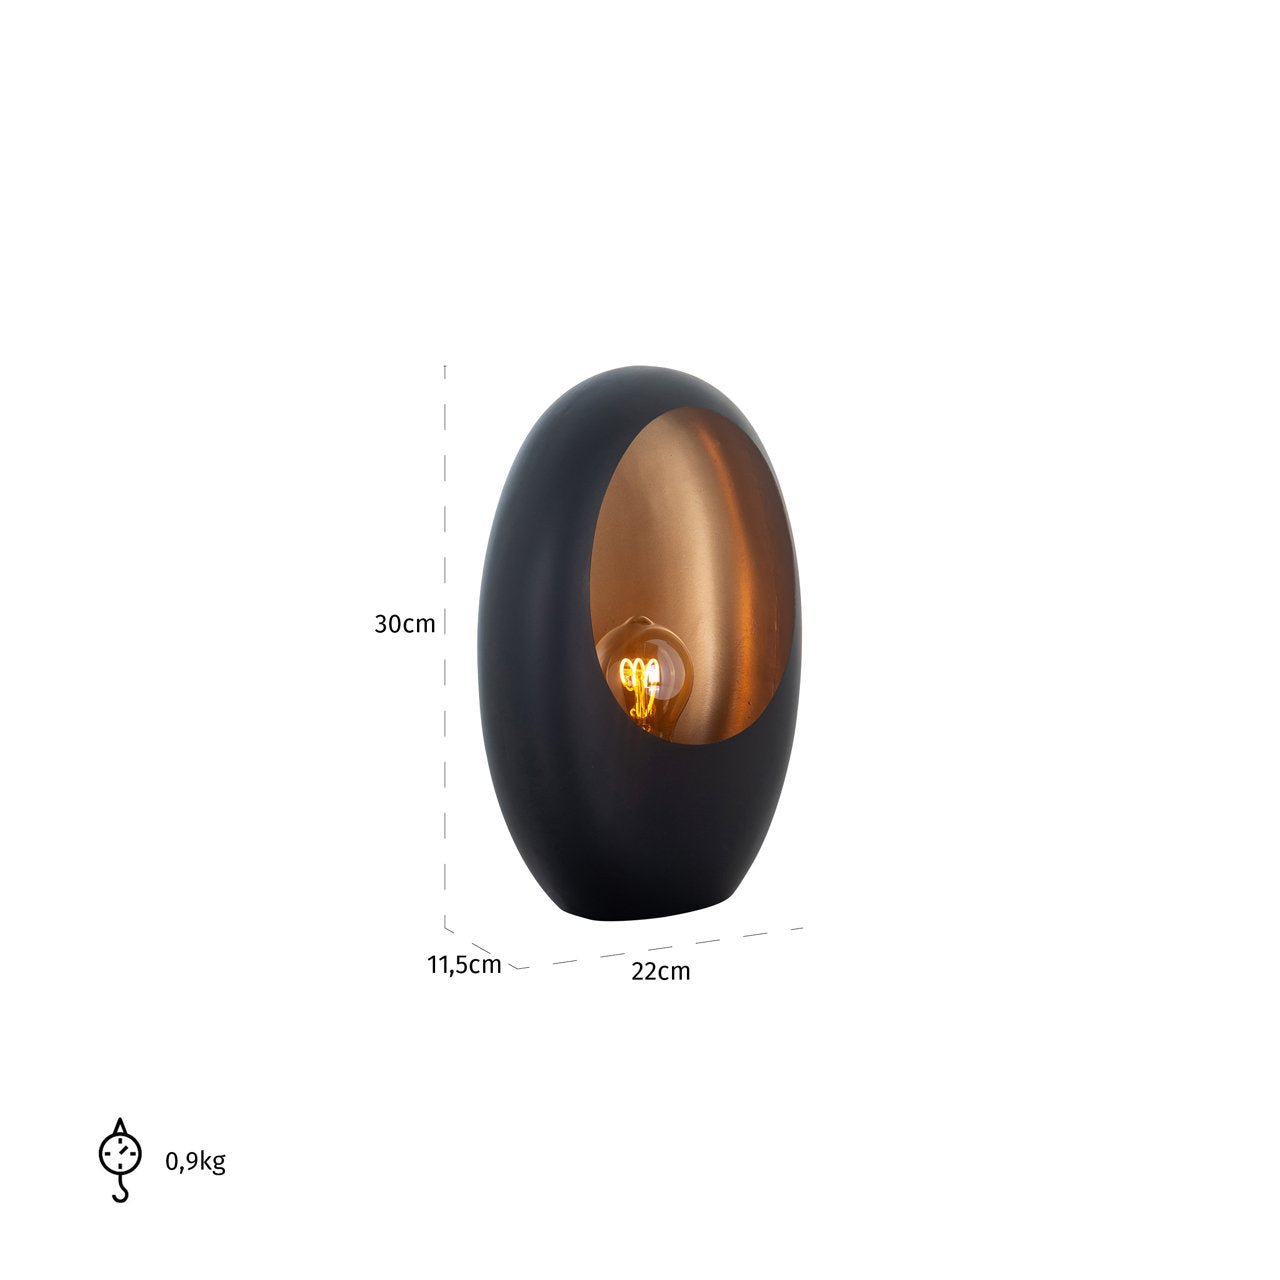 Eivormige Zwart-Gouden Tafellamp (Klein)